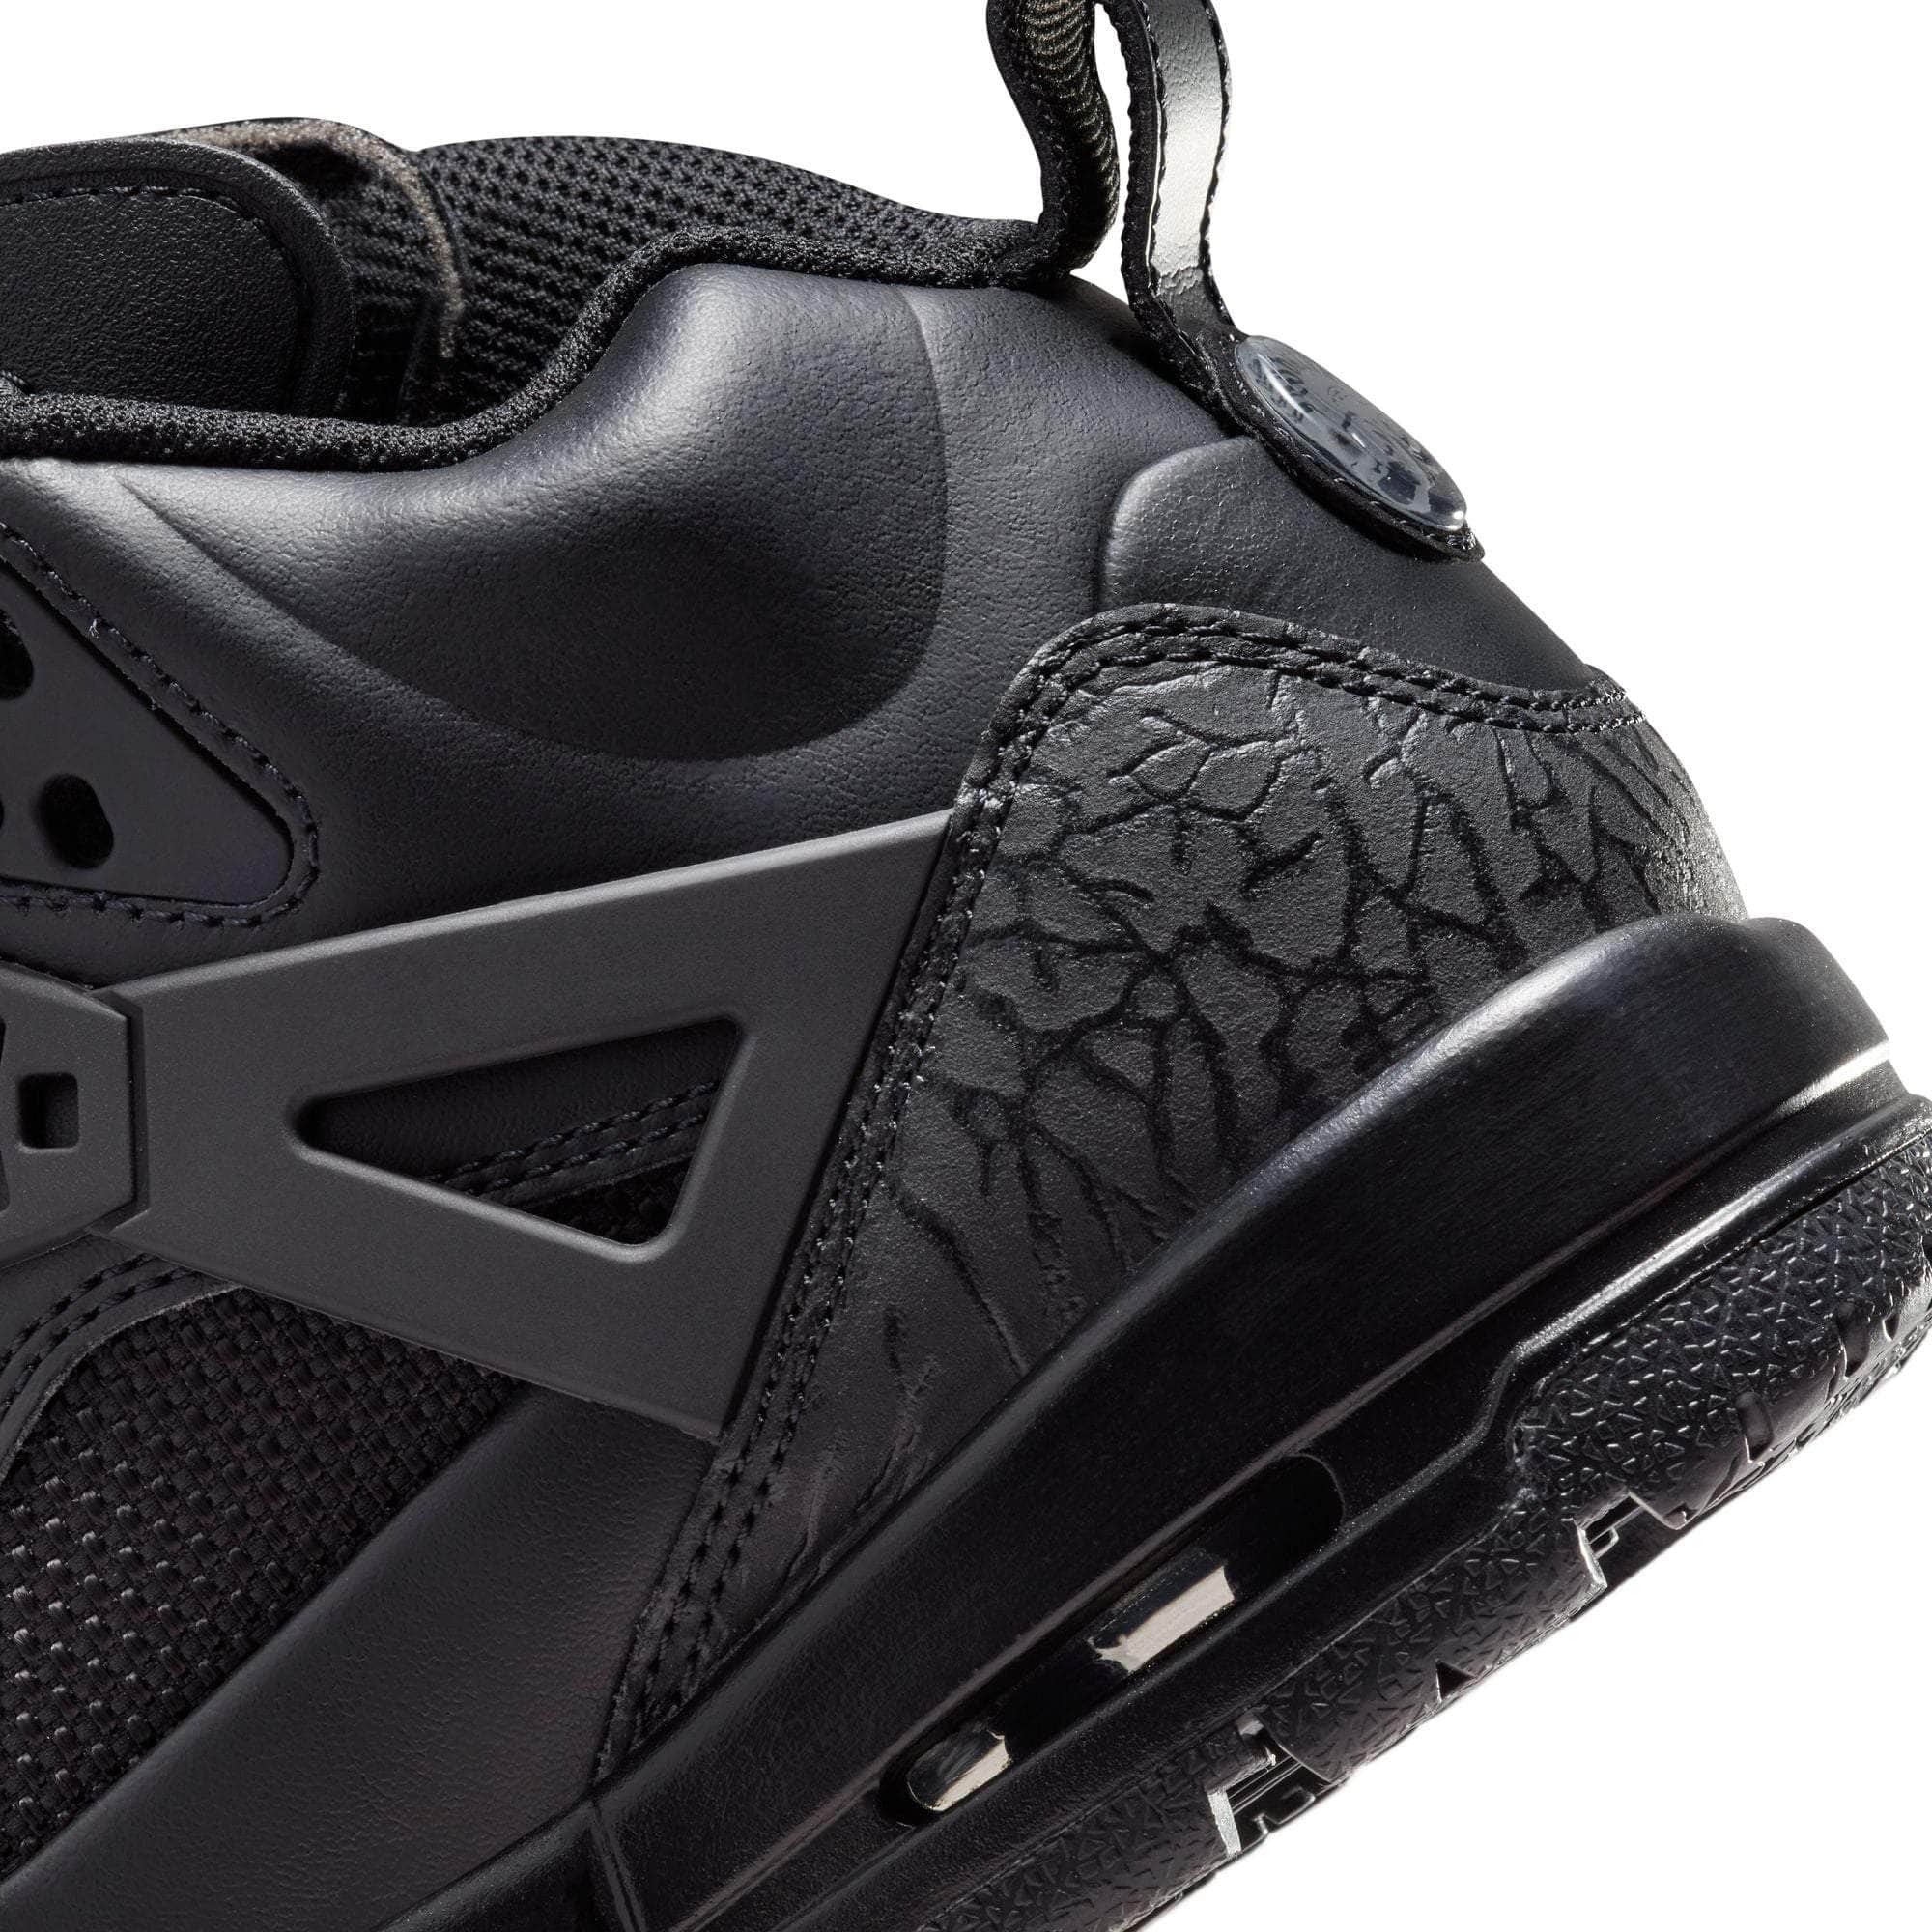 Air Jordan FOOTWEAR Air Jordan Winterized Spizike "Black Cat" - Boy's GS